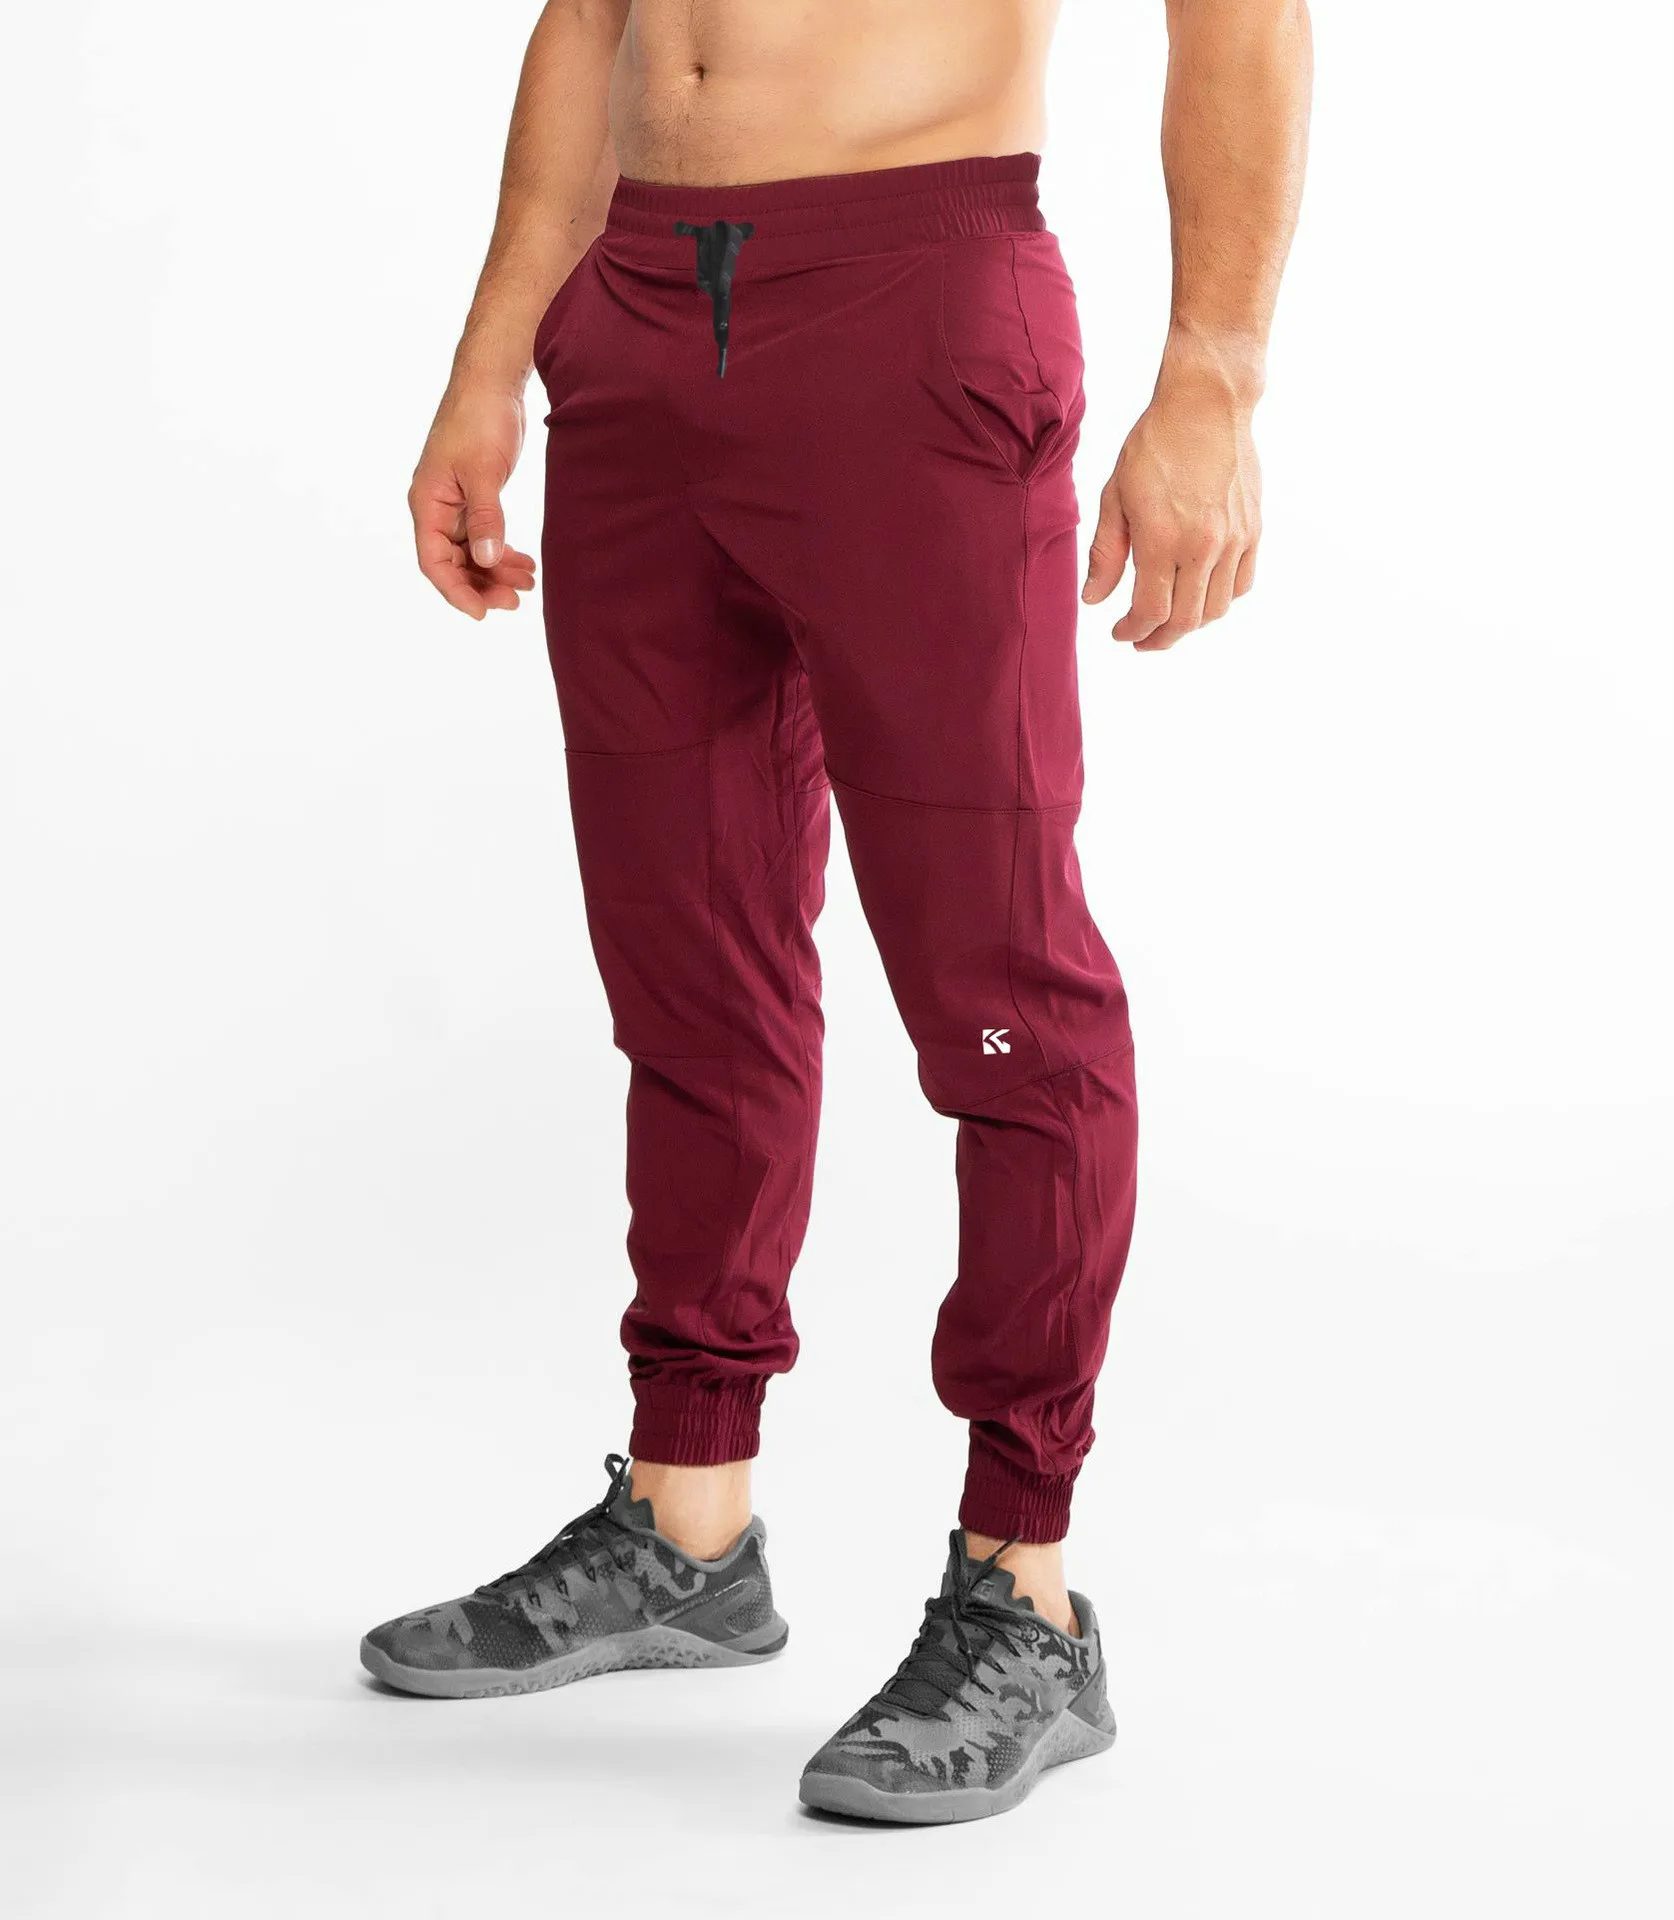 Мужские новые спортивные штаны, ветрозащитные штаны, повседневная спортивная одежда для бега, мужские спортивные штаны, эластичные спортивные штаны, Мужские штаны - Цвет: Красный